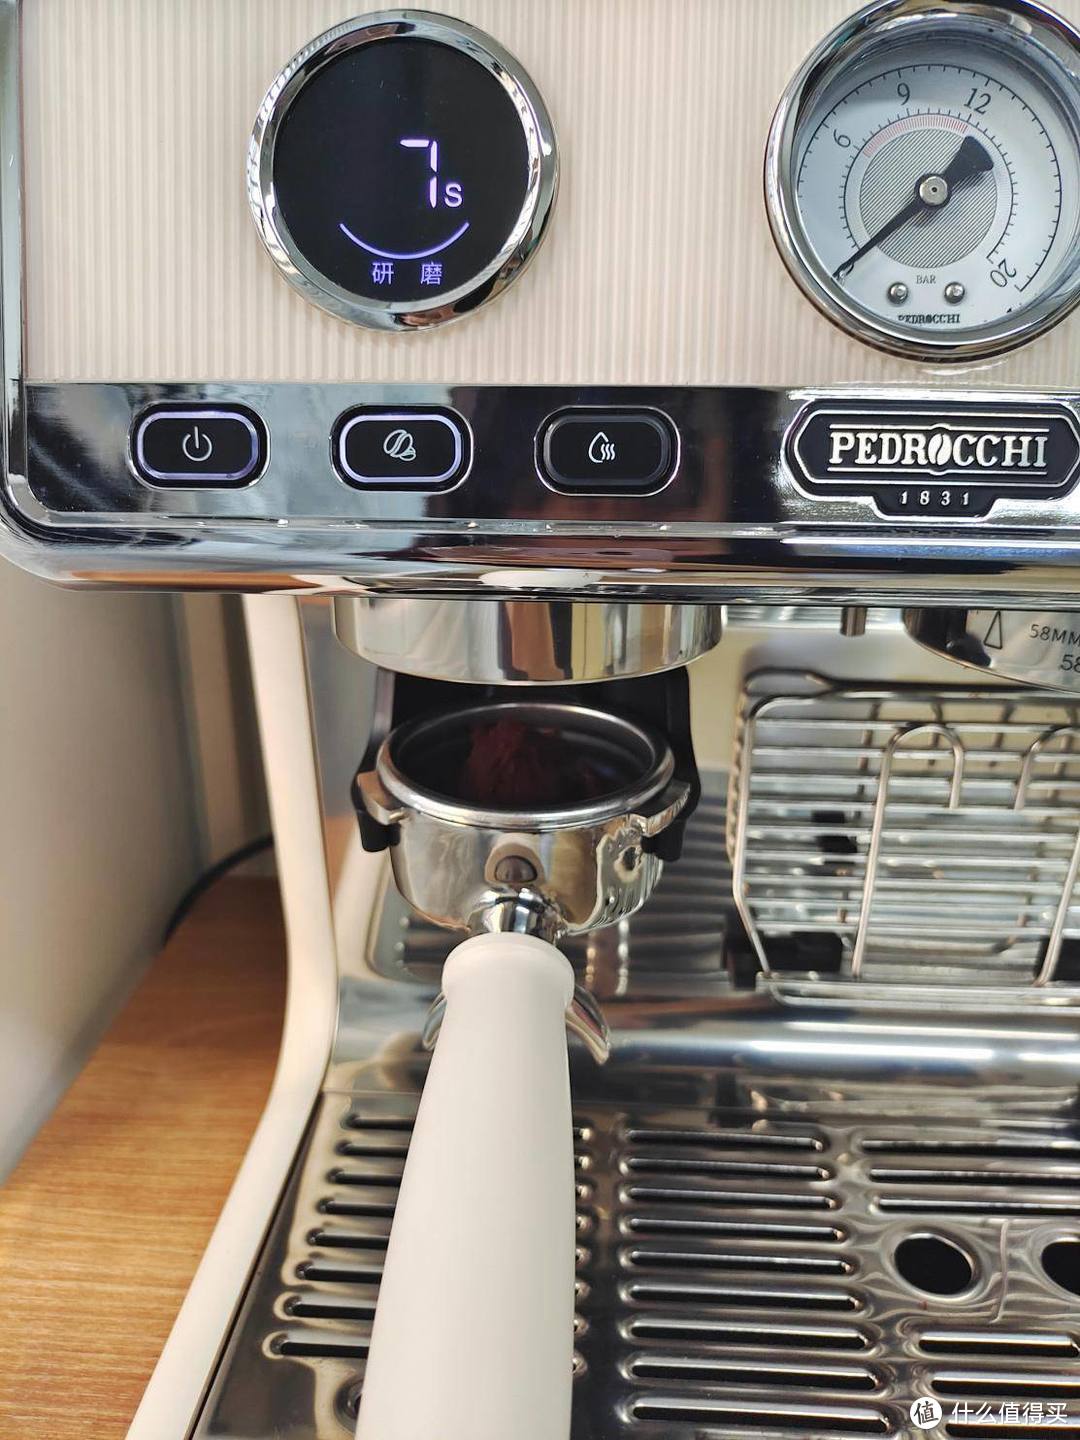 Pedrocchi佩罗奇与马克西姆咖啡机哪个性价比更高？看完这篇真香！